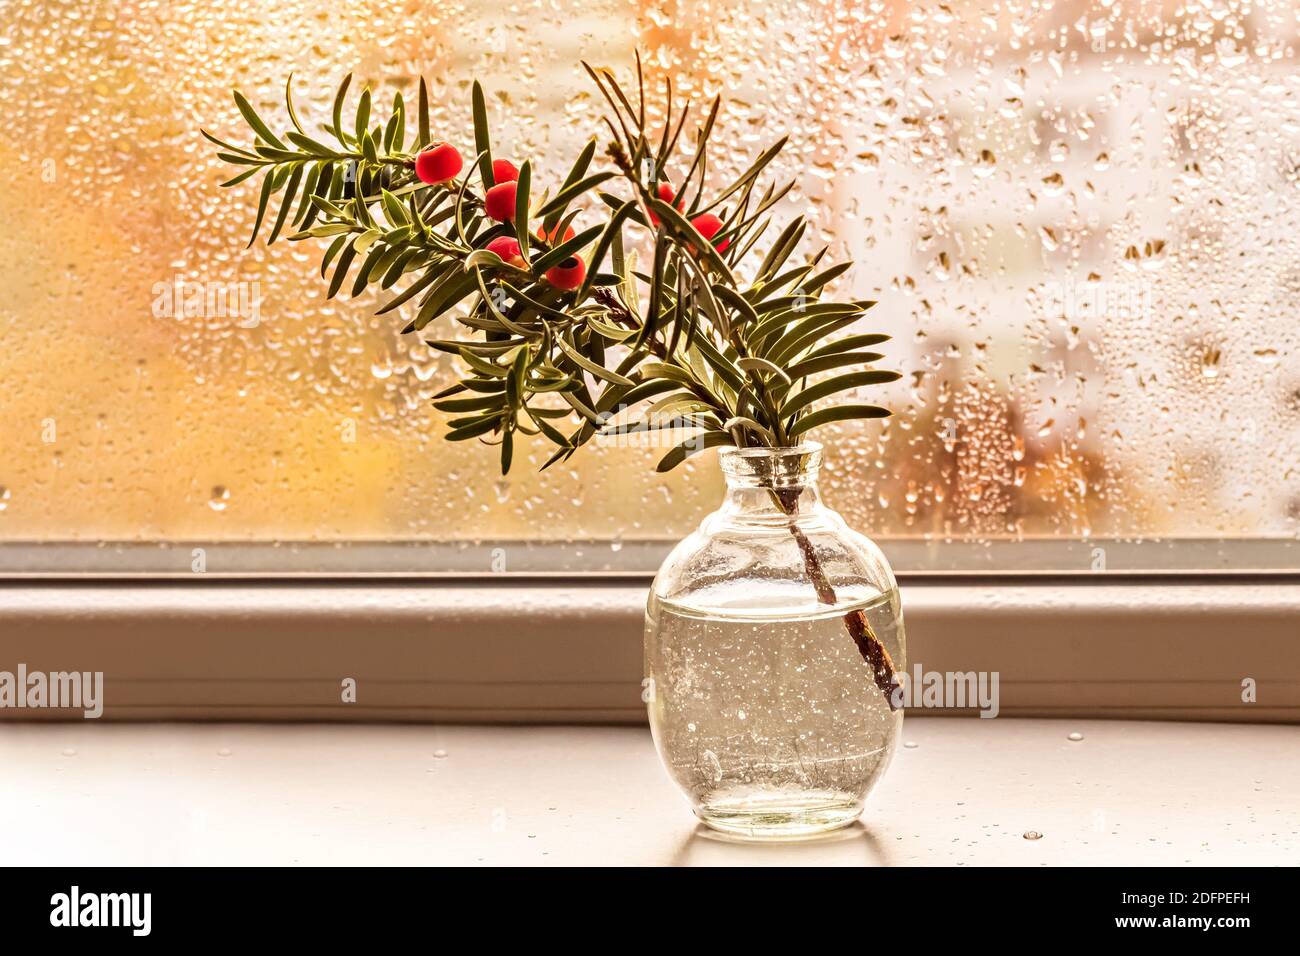 Ein Zweig der Eibe mit roten Beeren in einer kleinen Vase am Fenster. Stockfoto